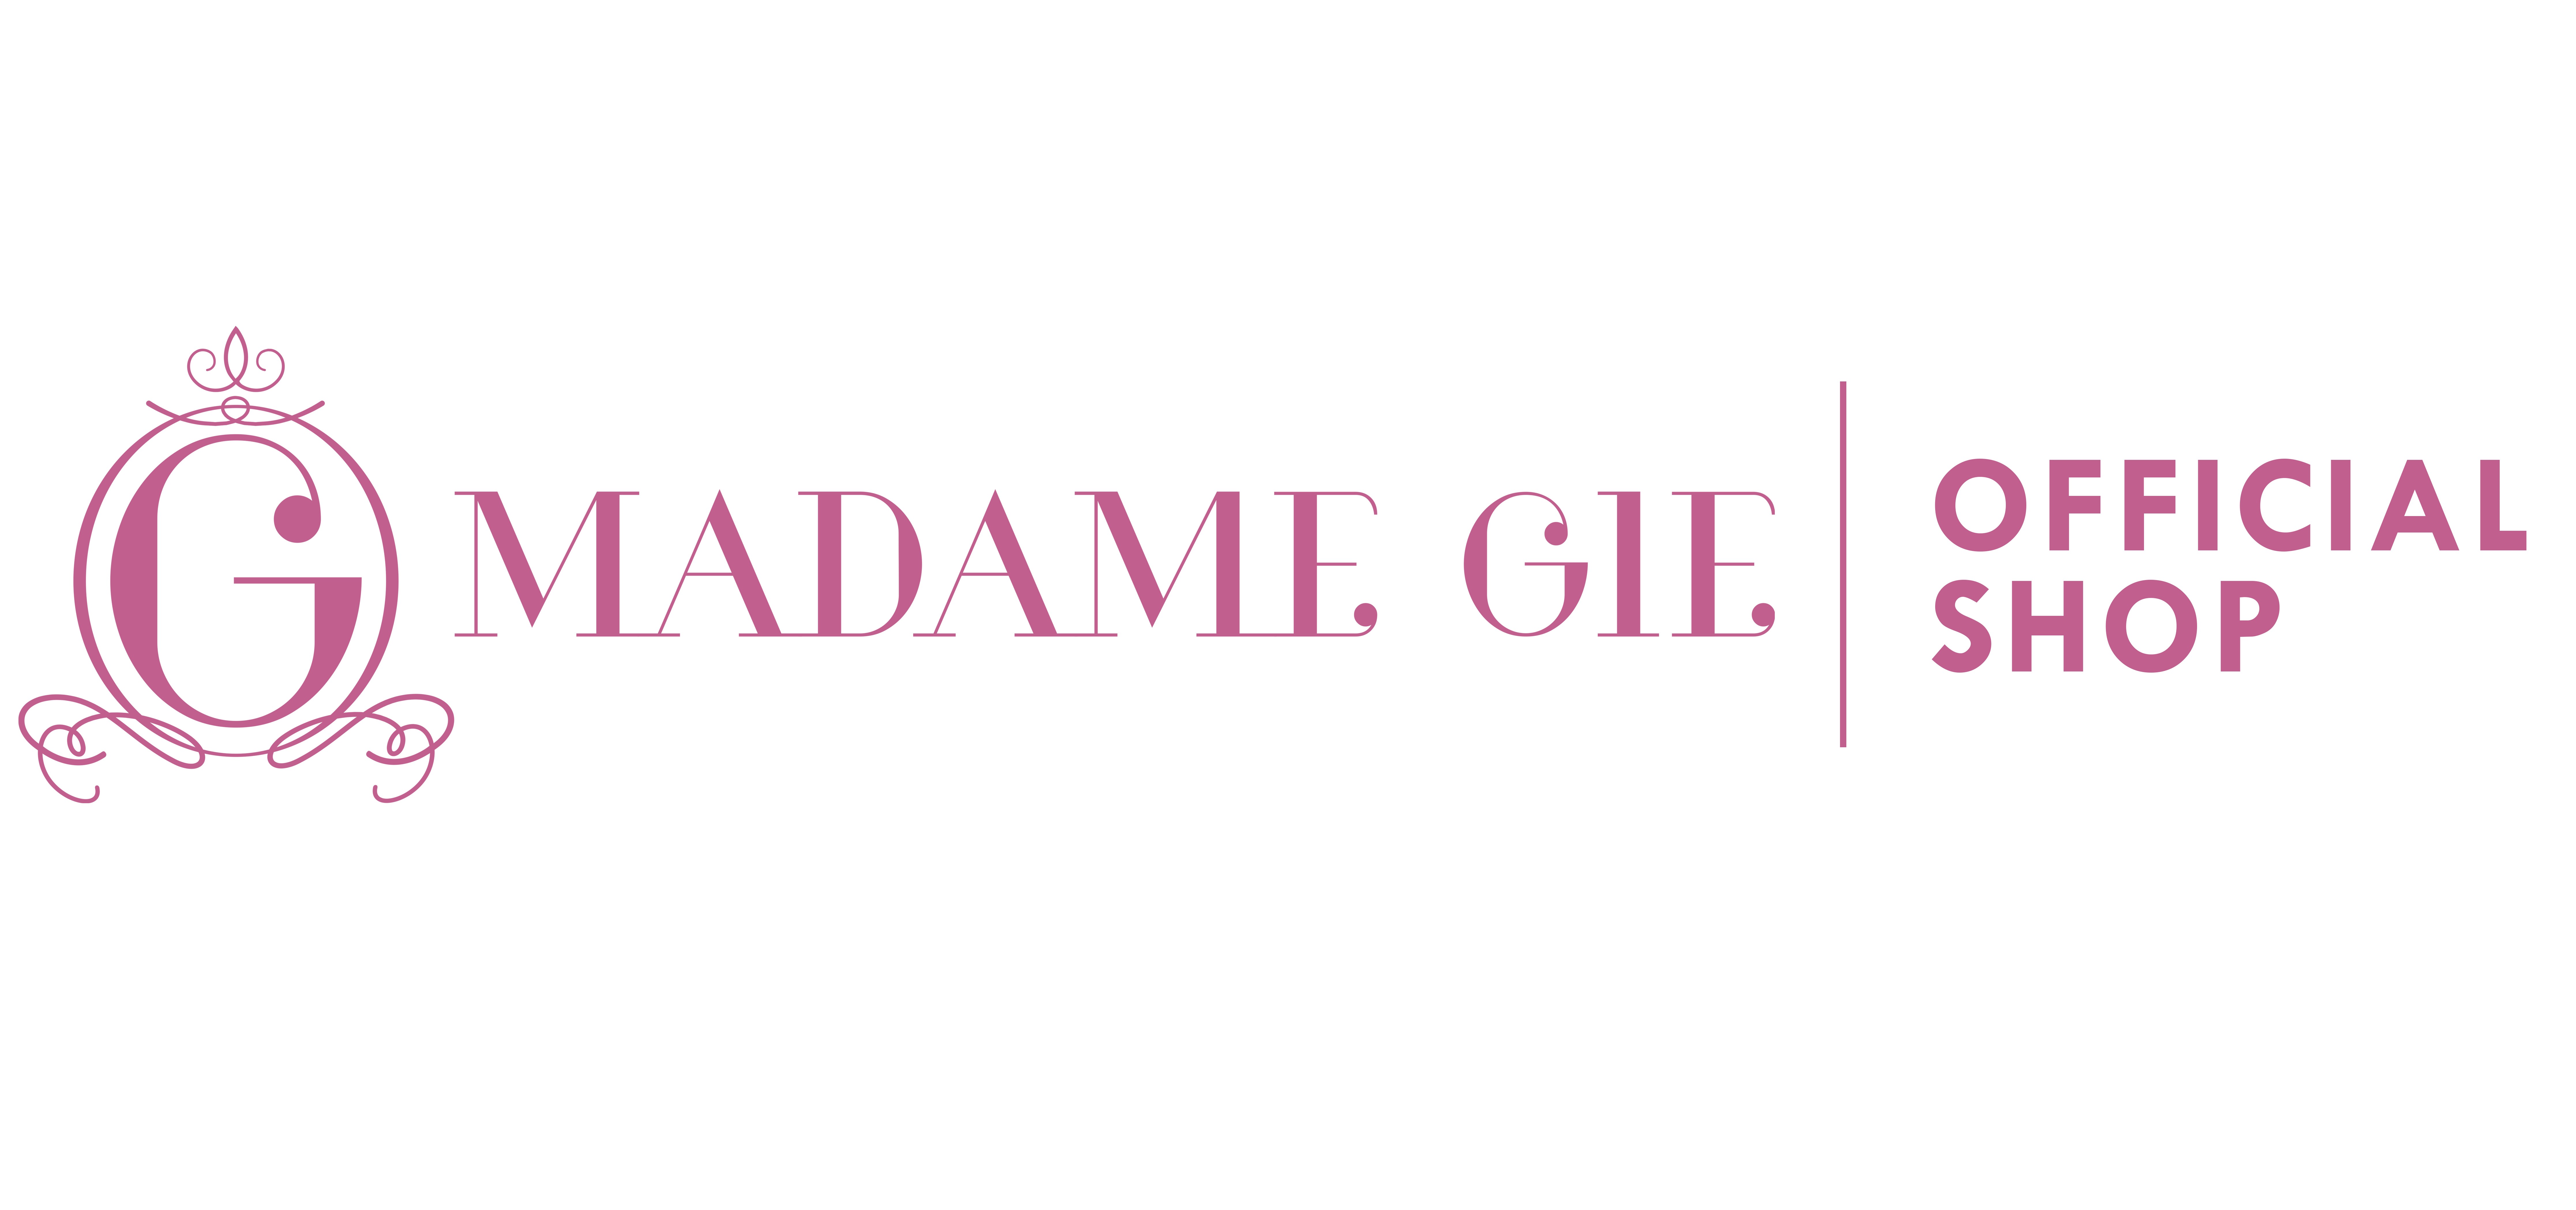 Madame Gie Safety Face Shield Black - Kacamata Pelindung